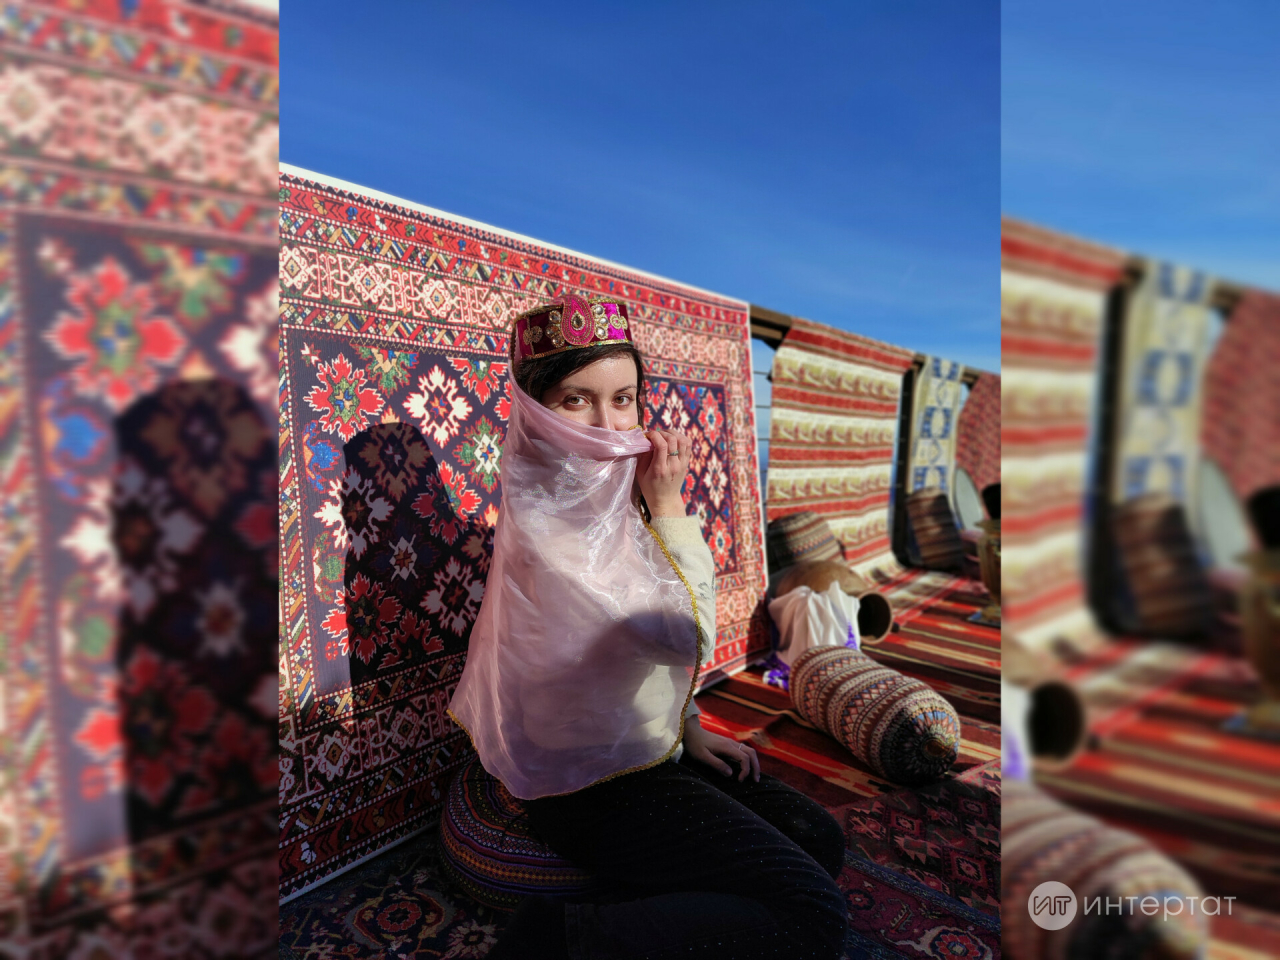 Азәрбайҗан мәдәнияте турында: иң популяр ризыклар яки нигә туган телнең бетү куркынычы юк